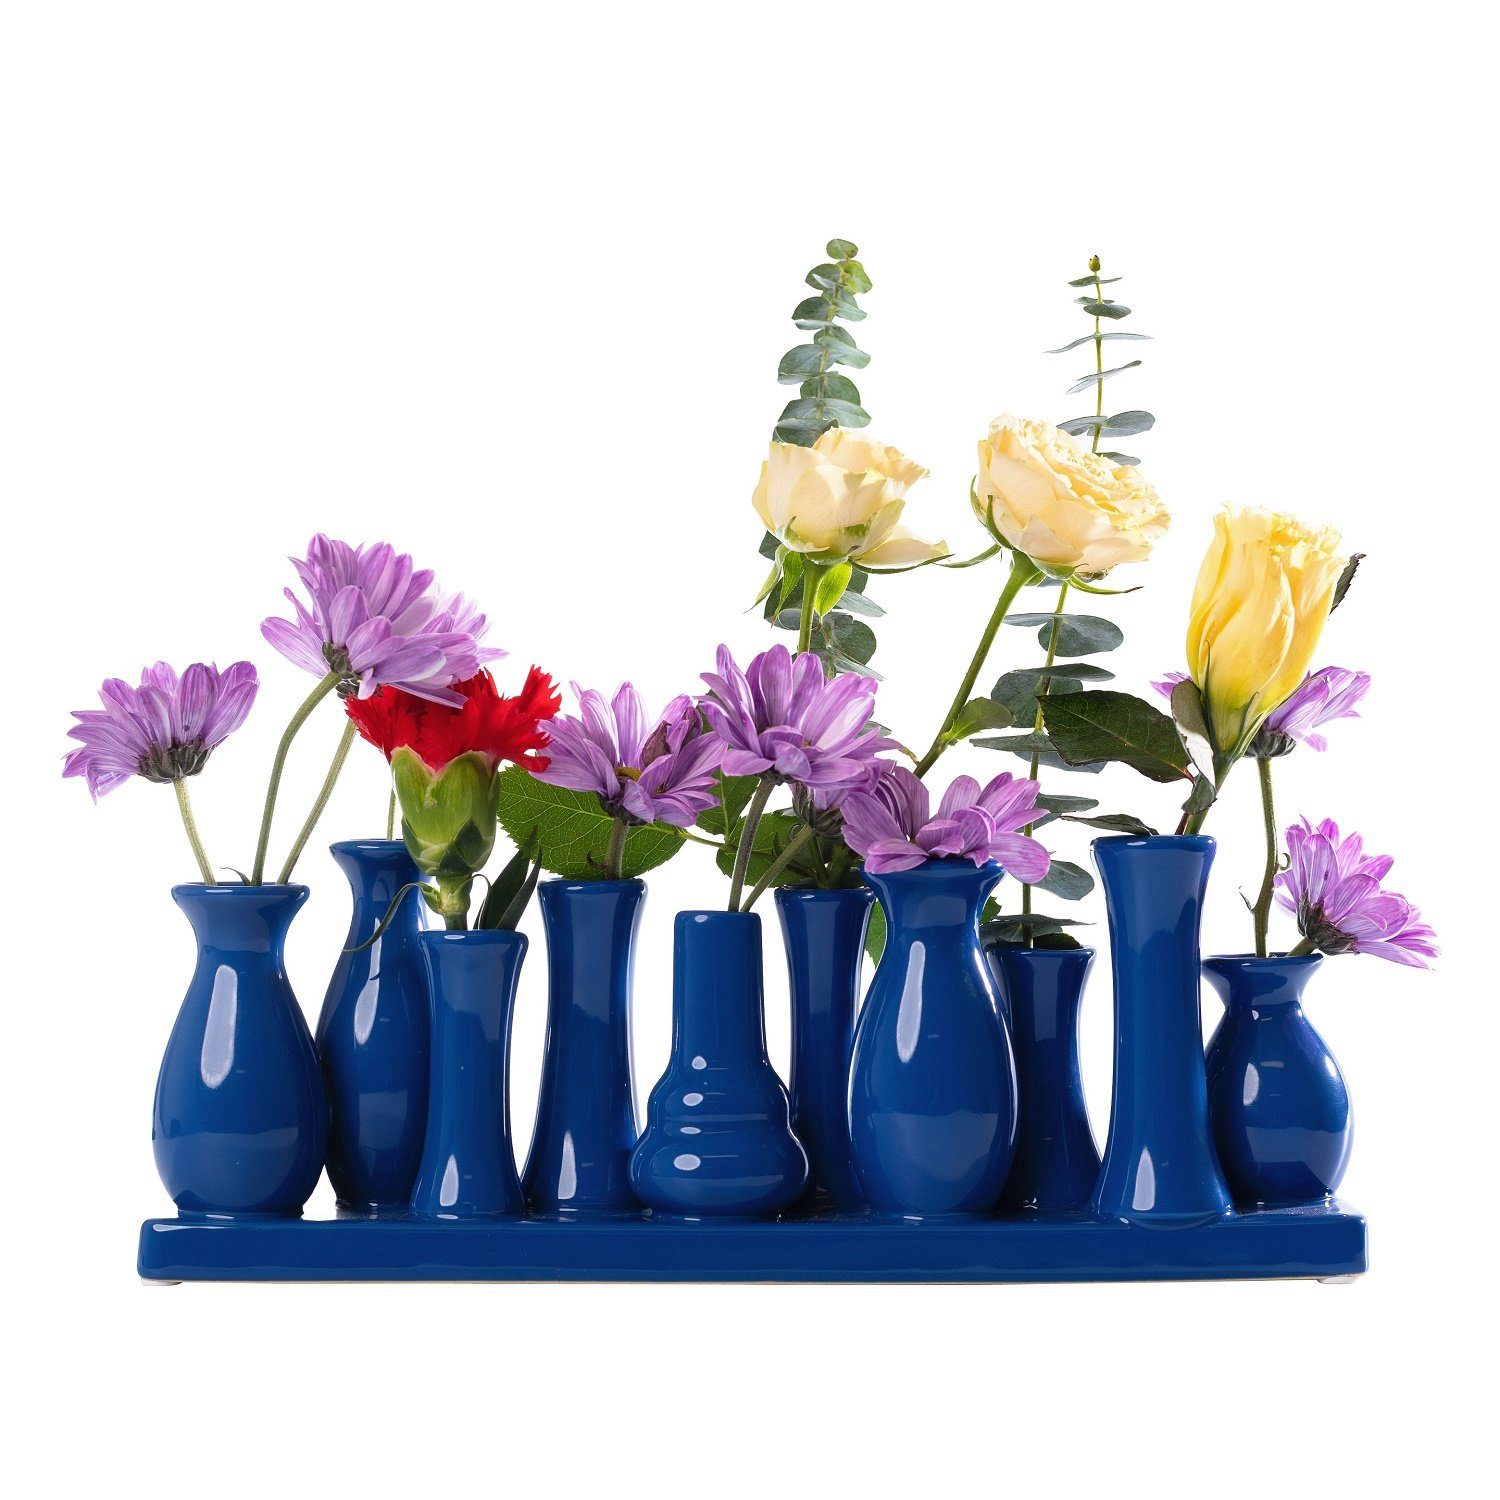 Jinfa Dekovase Handgefertigte kleine Keramik Deko Вази для квітів (10 Vasen Set blau), verbunden auf auf einem Tablett